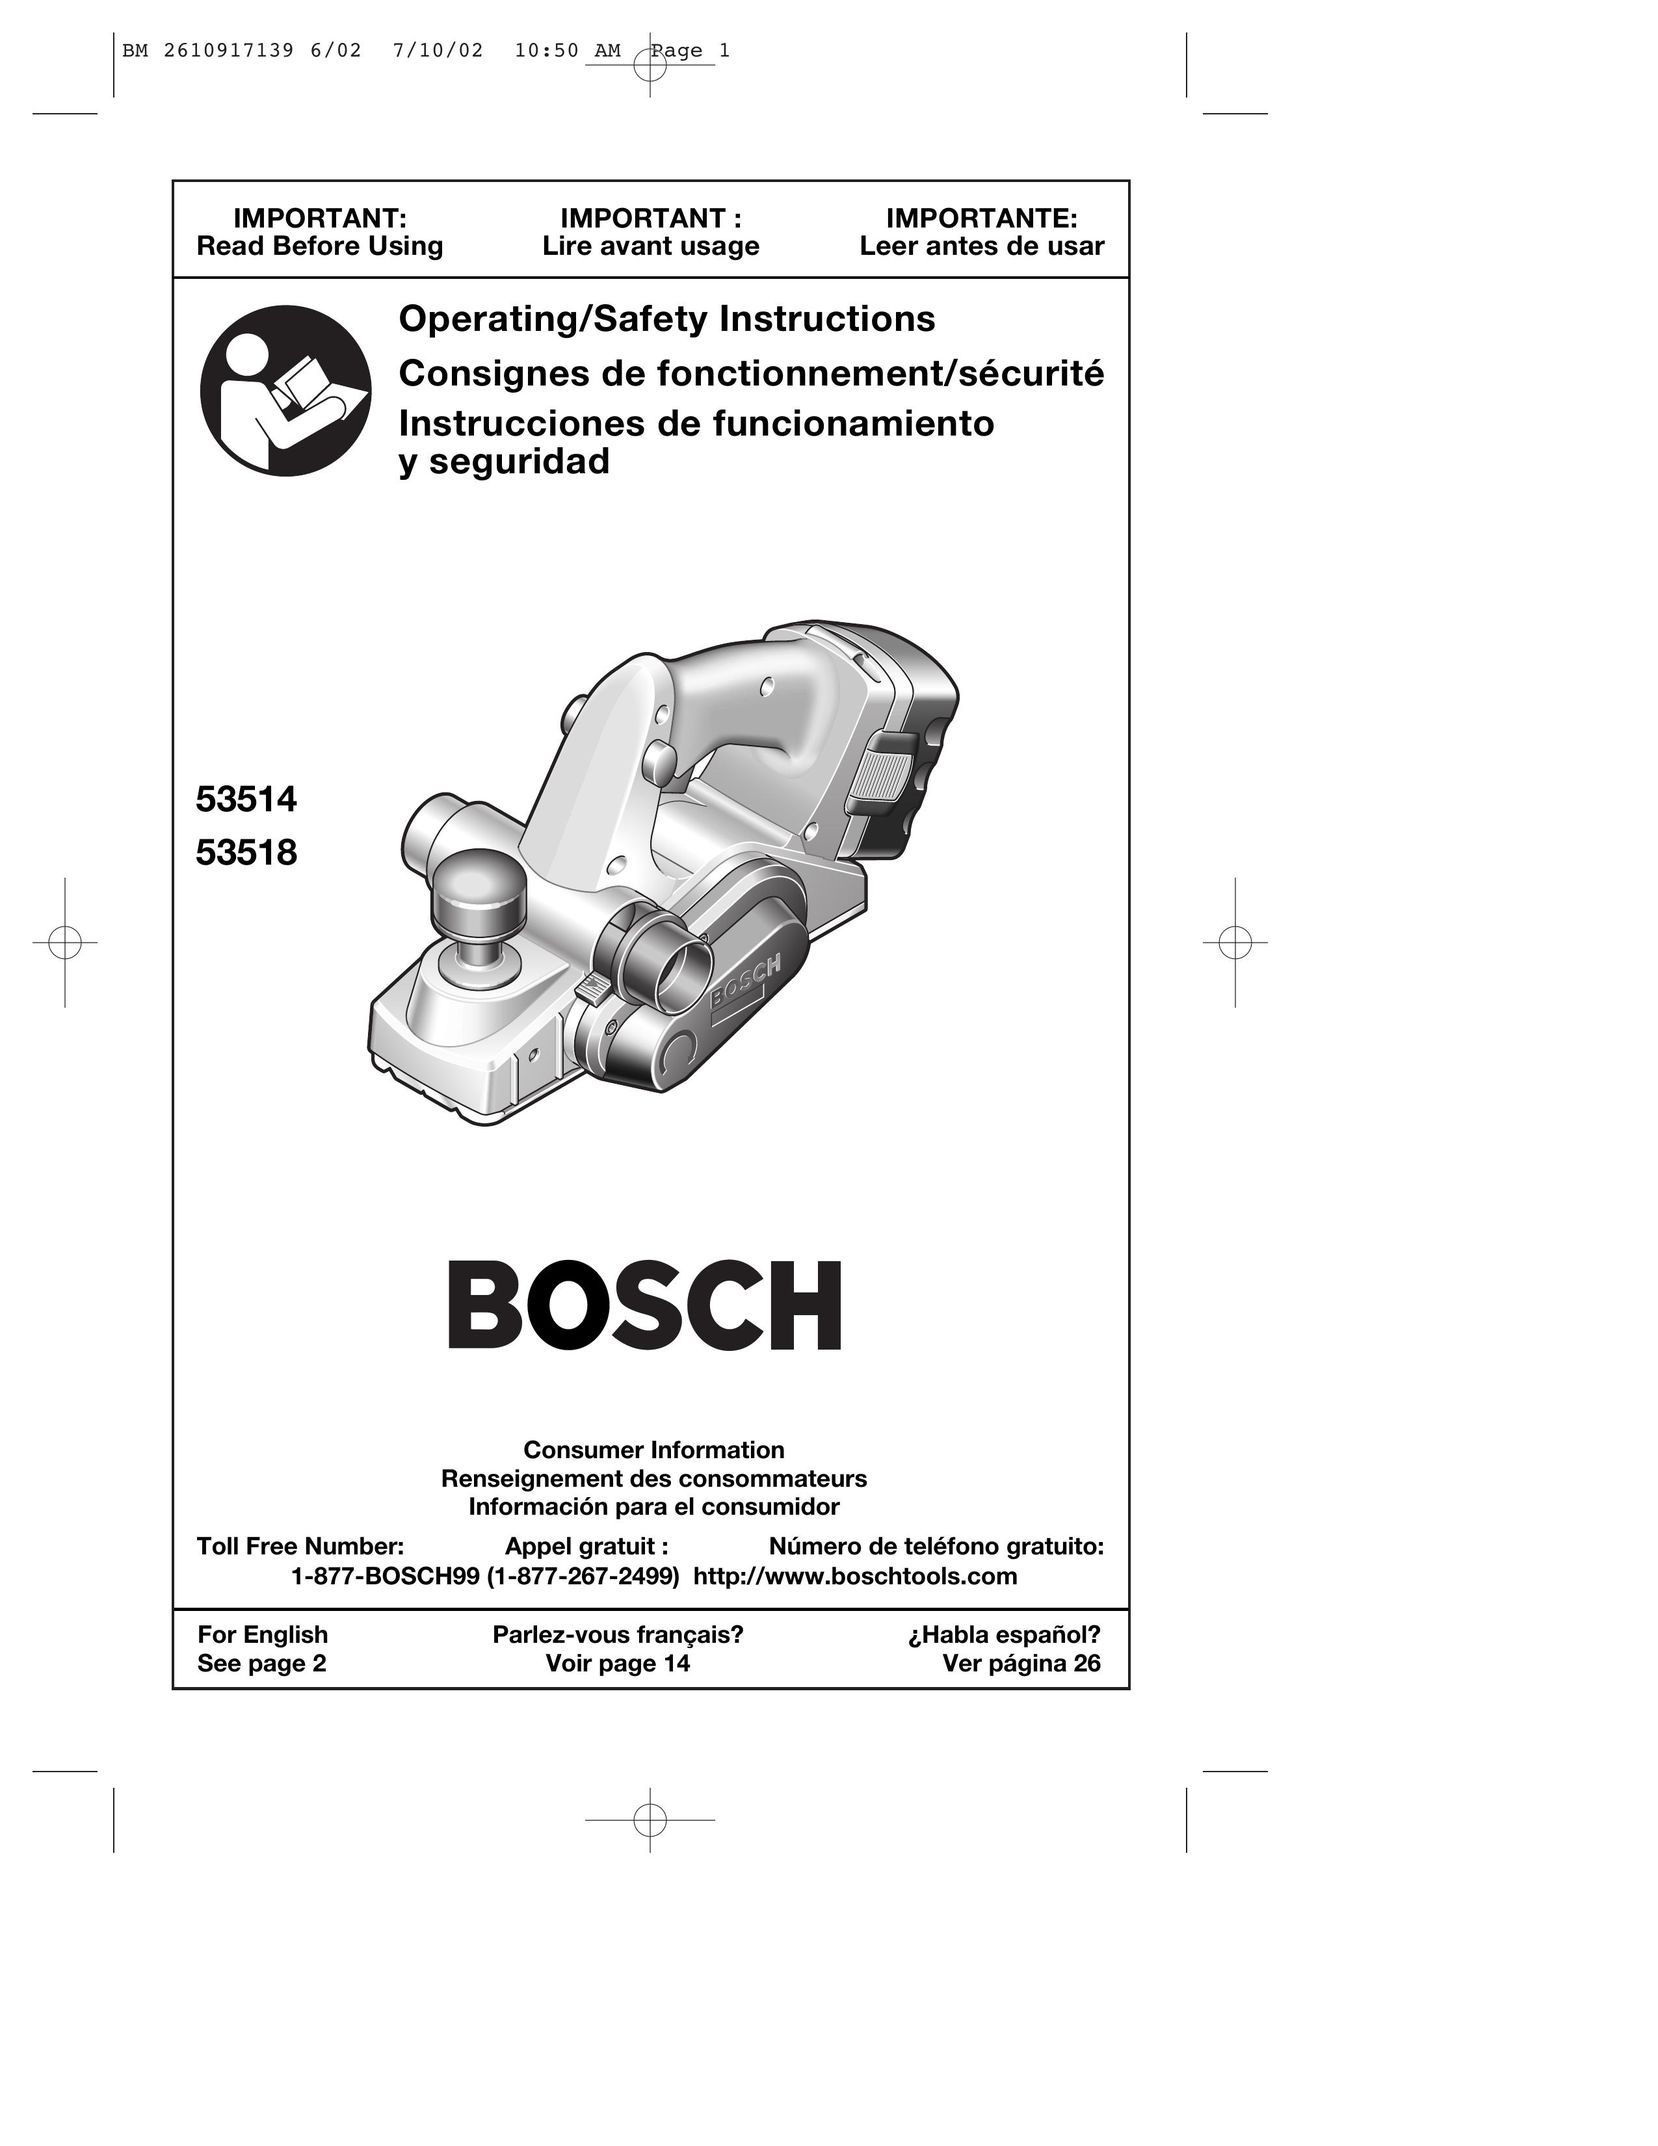 Bosch Power Tools 53514 Planer User Manual